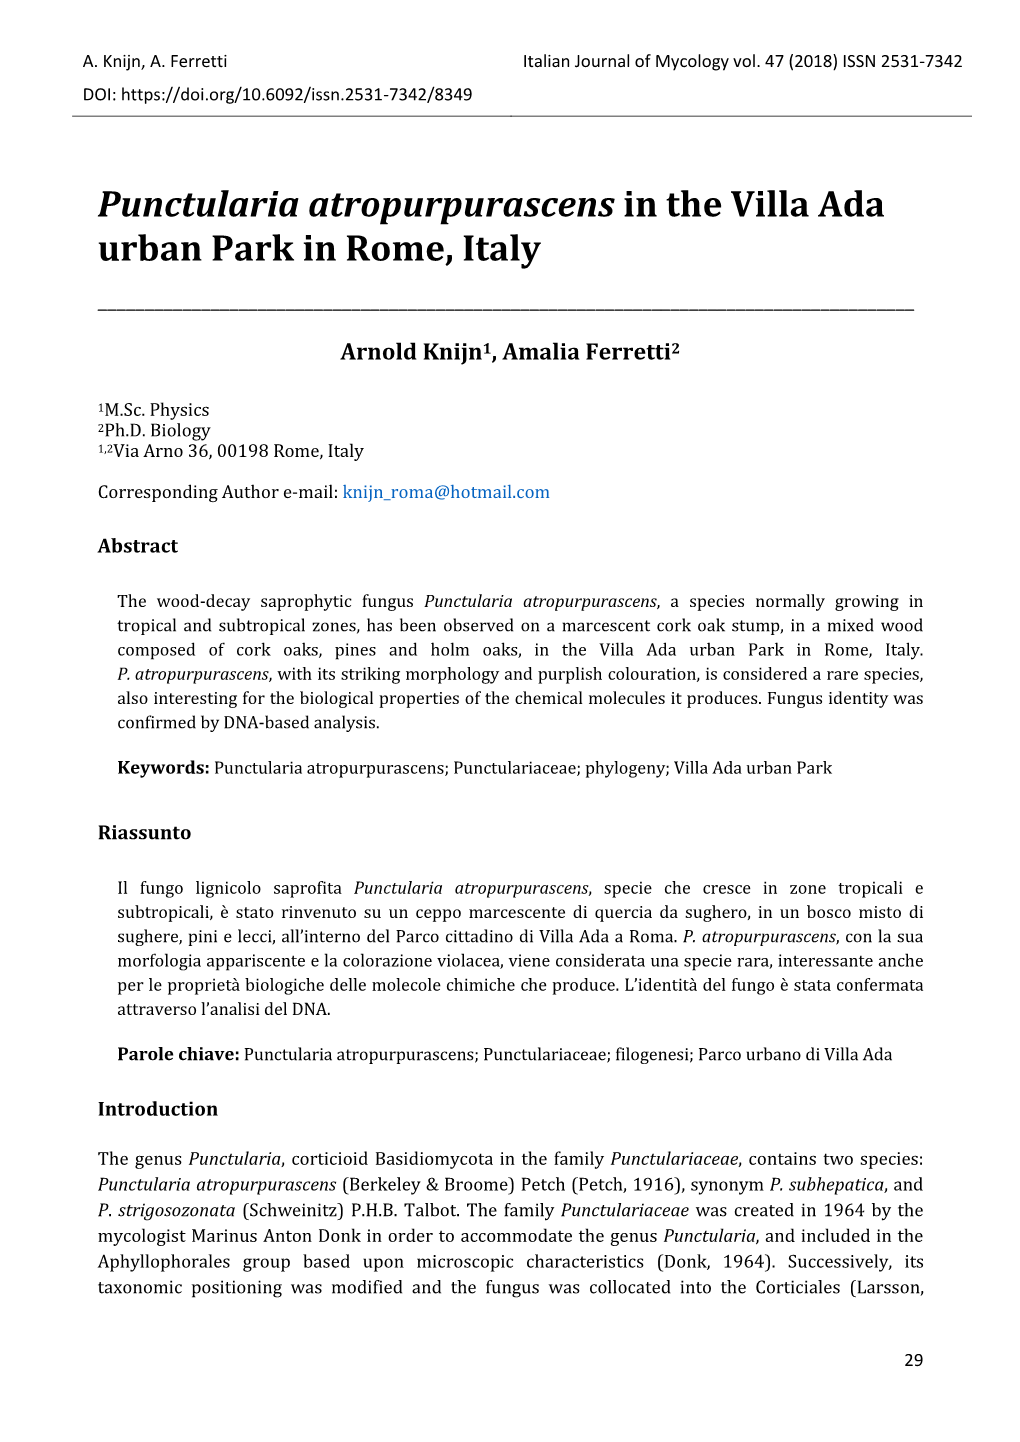 Punctularia Atropurpurascens in the Villa Ada Urban Park in Rome, Italy